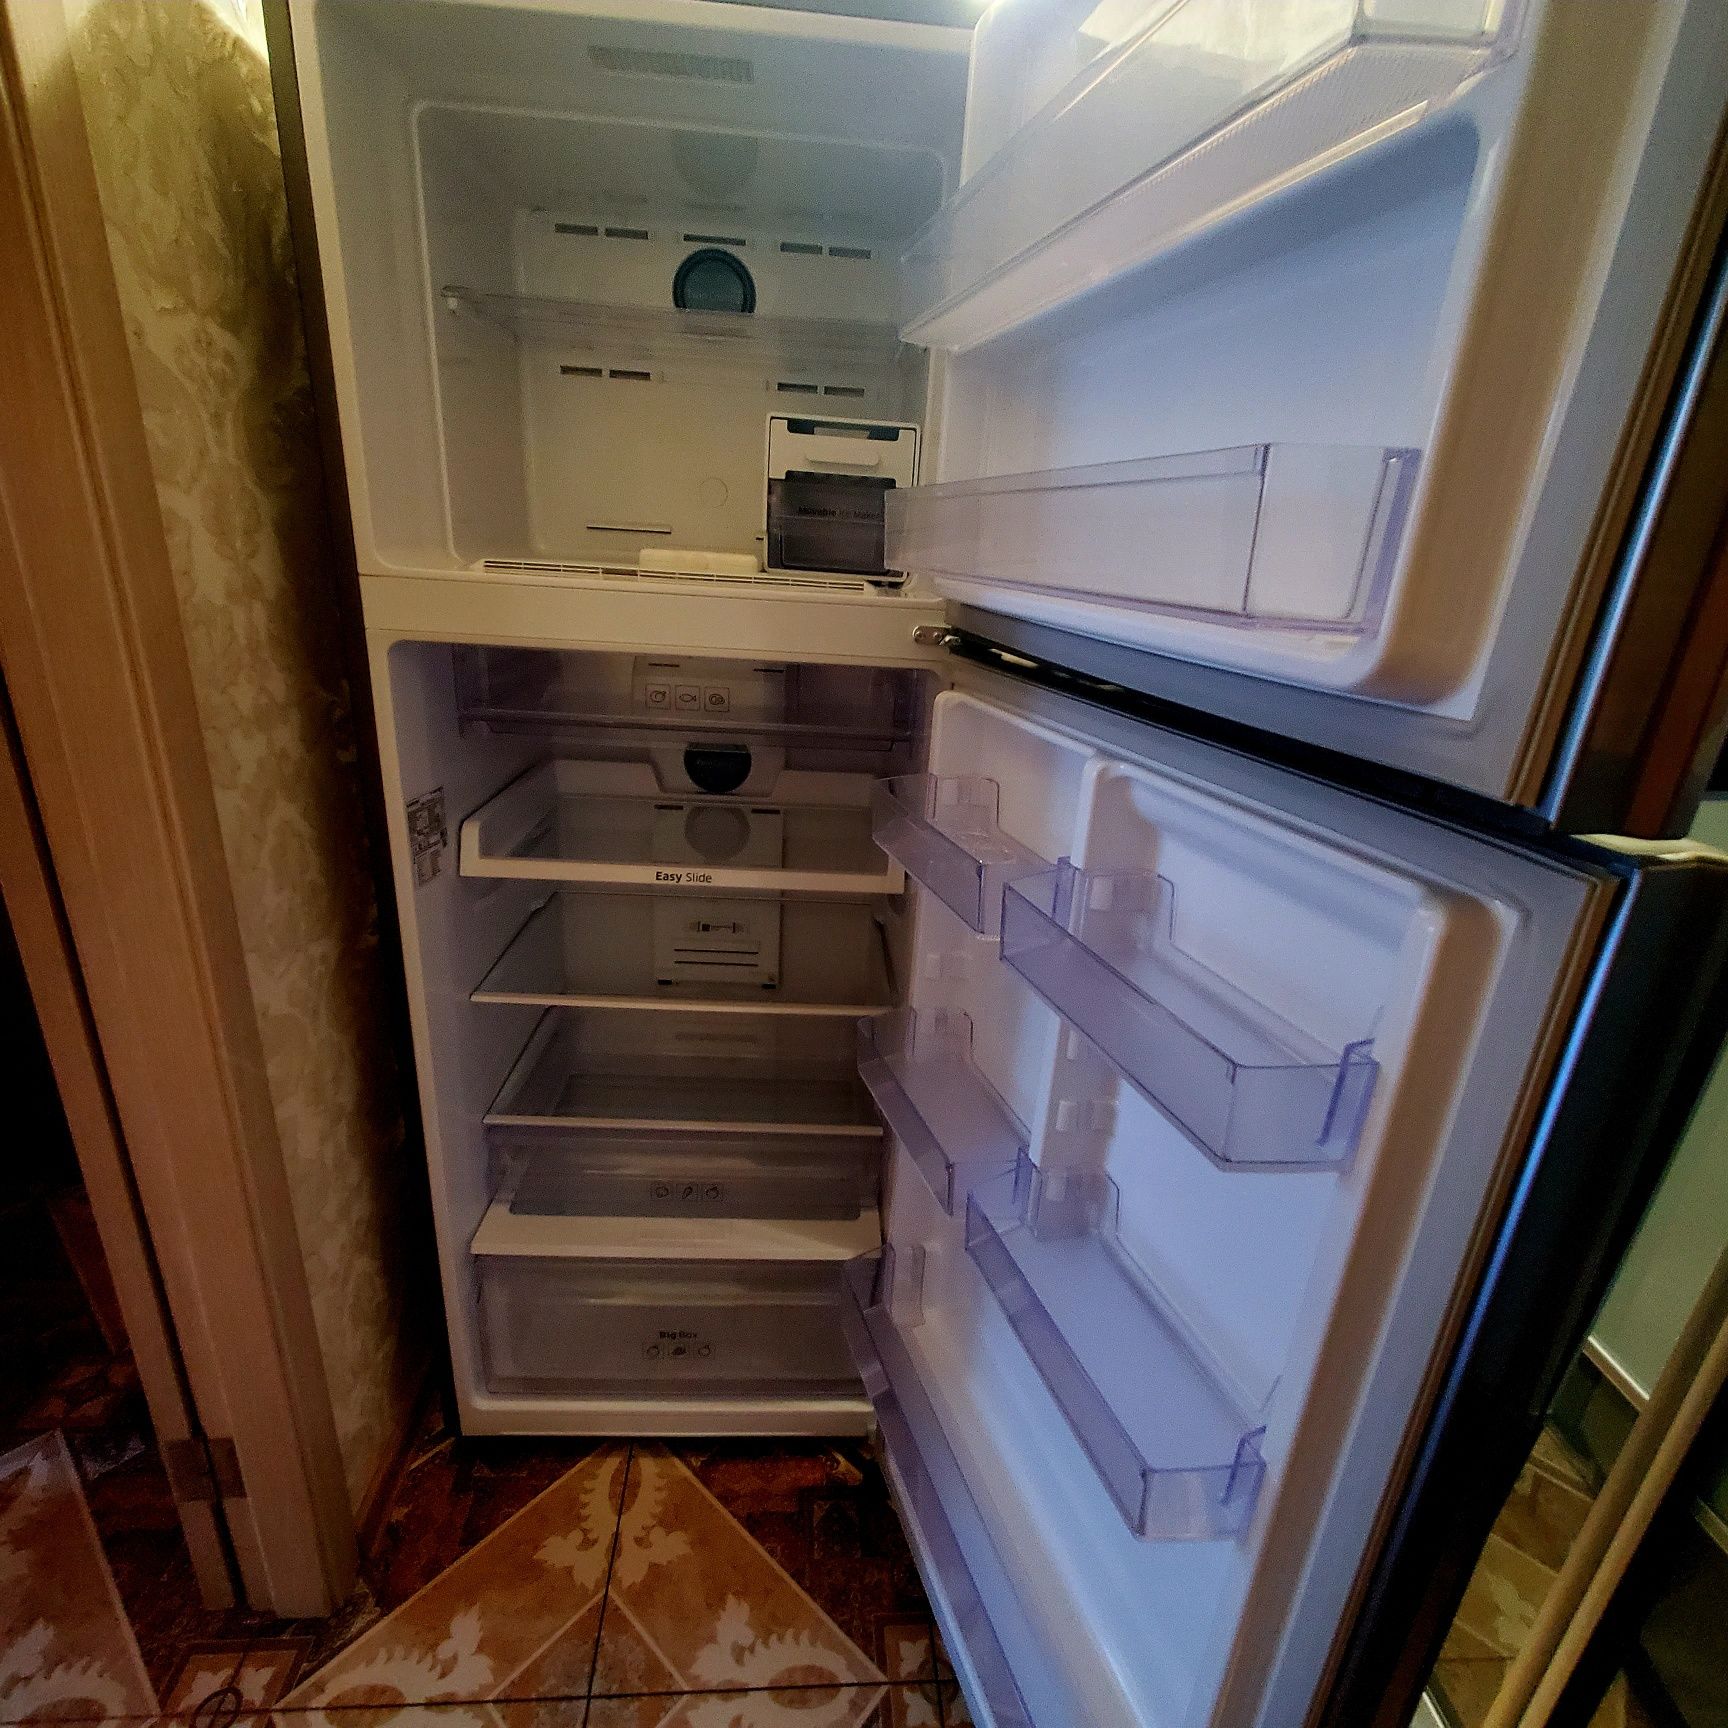 Холодильник Samsung широкий 70см,стан новенького.